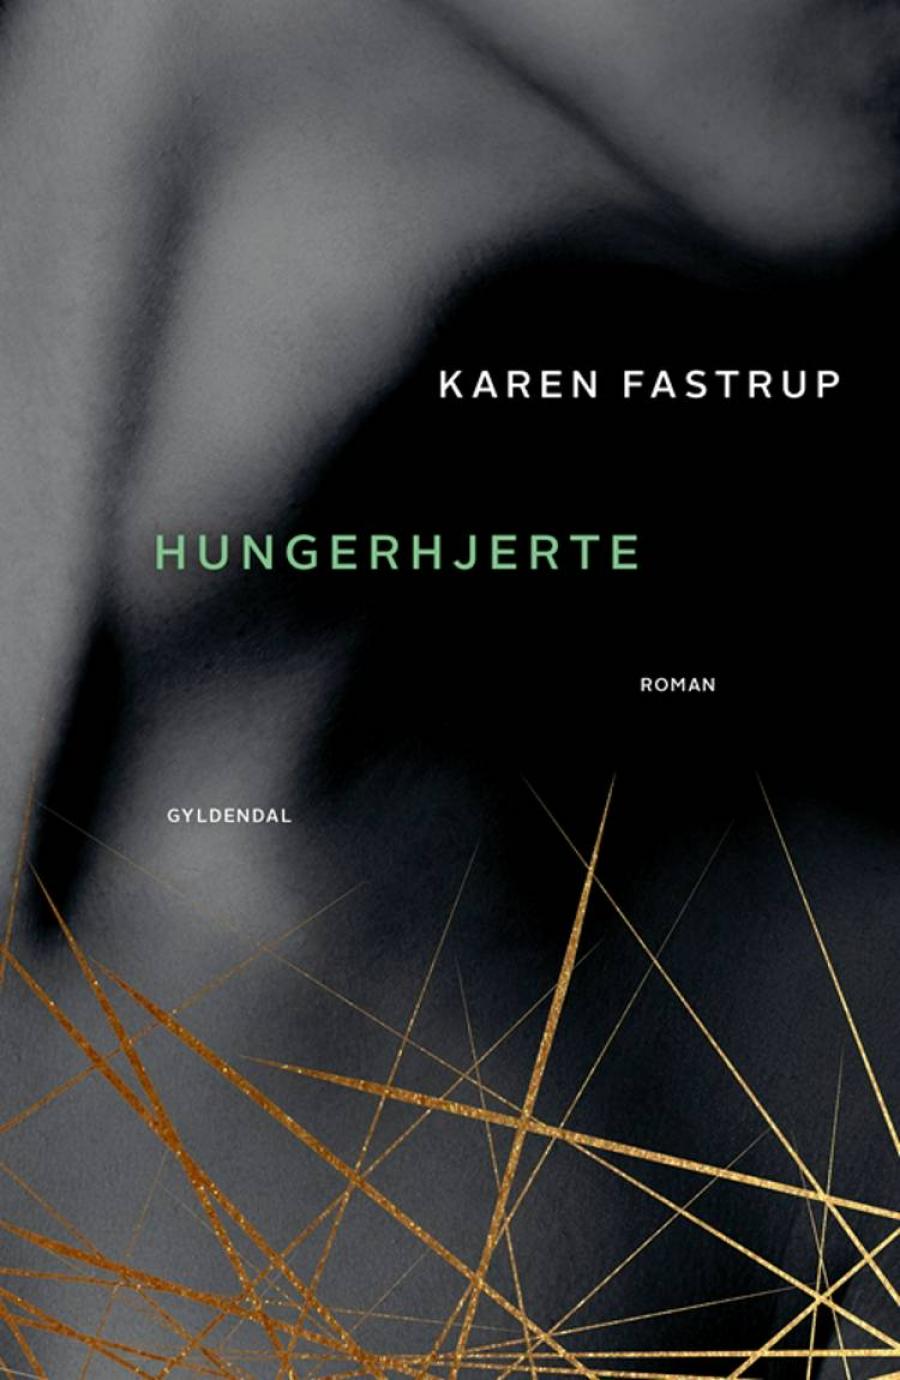 Forside til bogen "Hungerhjerte" af Karen Fastrup.